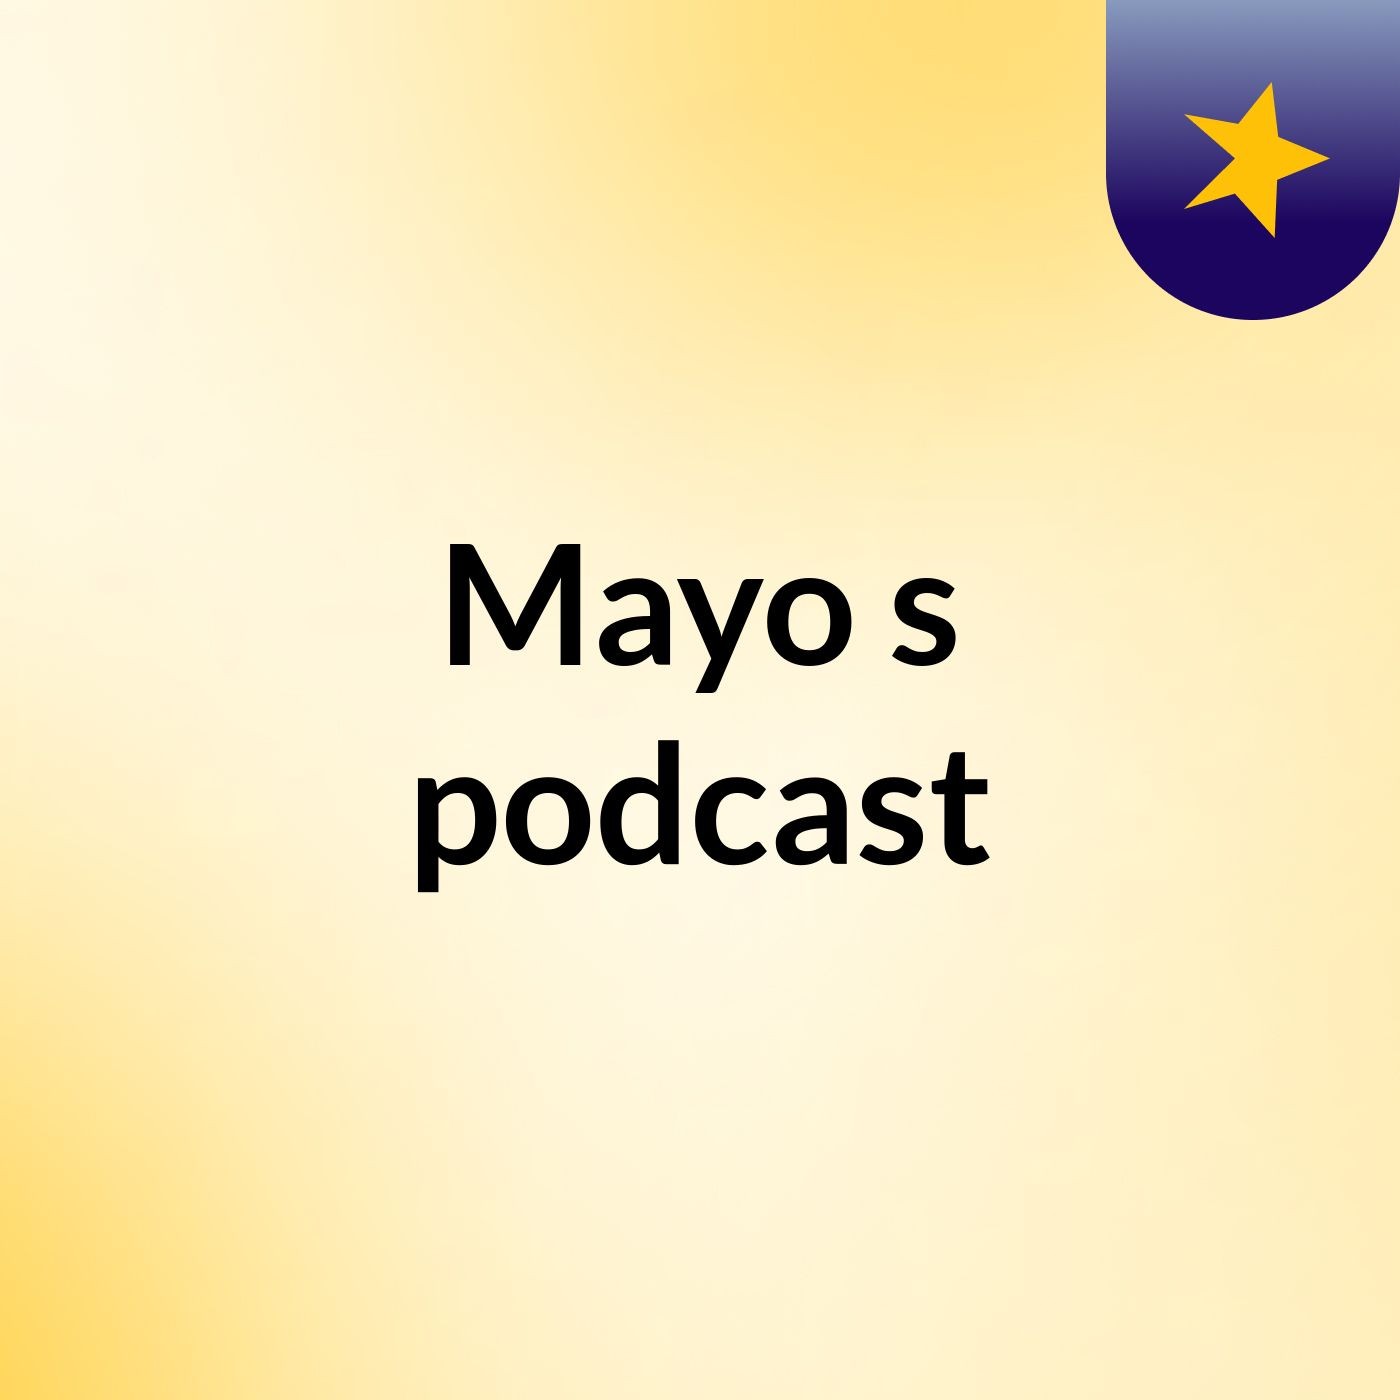 Episode 4 - Mayo's podcast